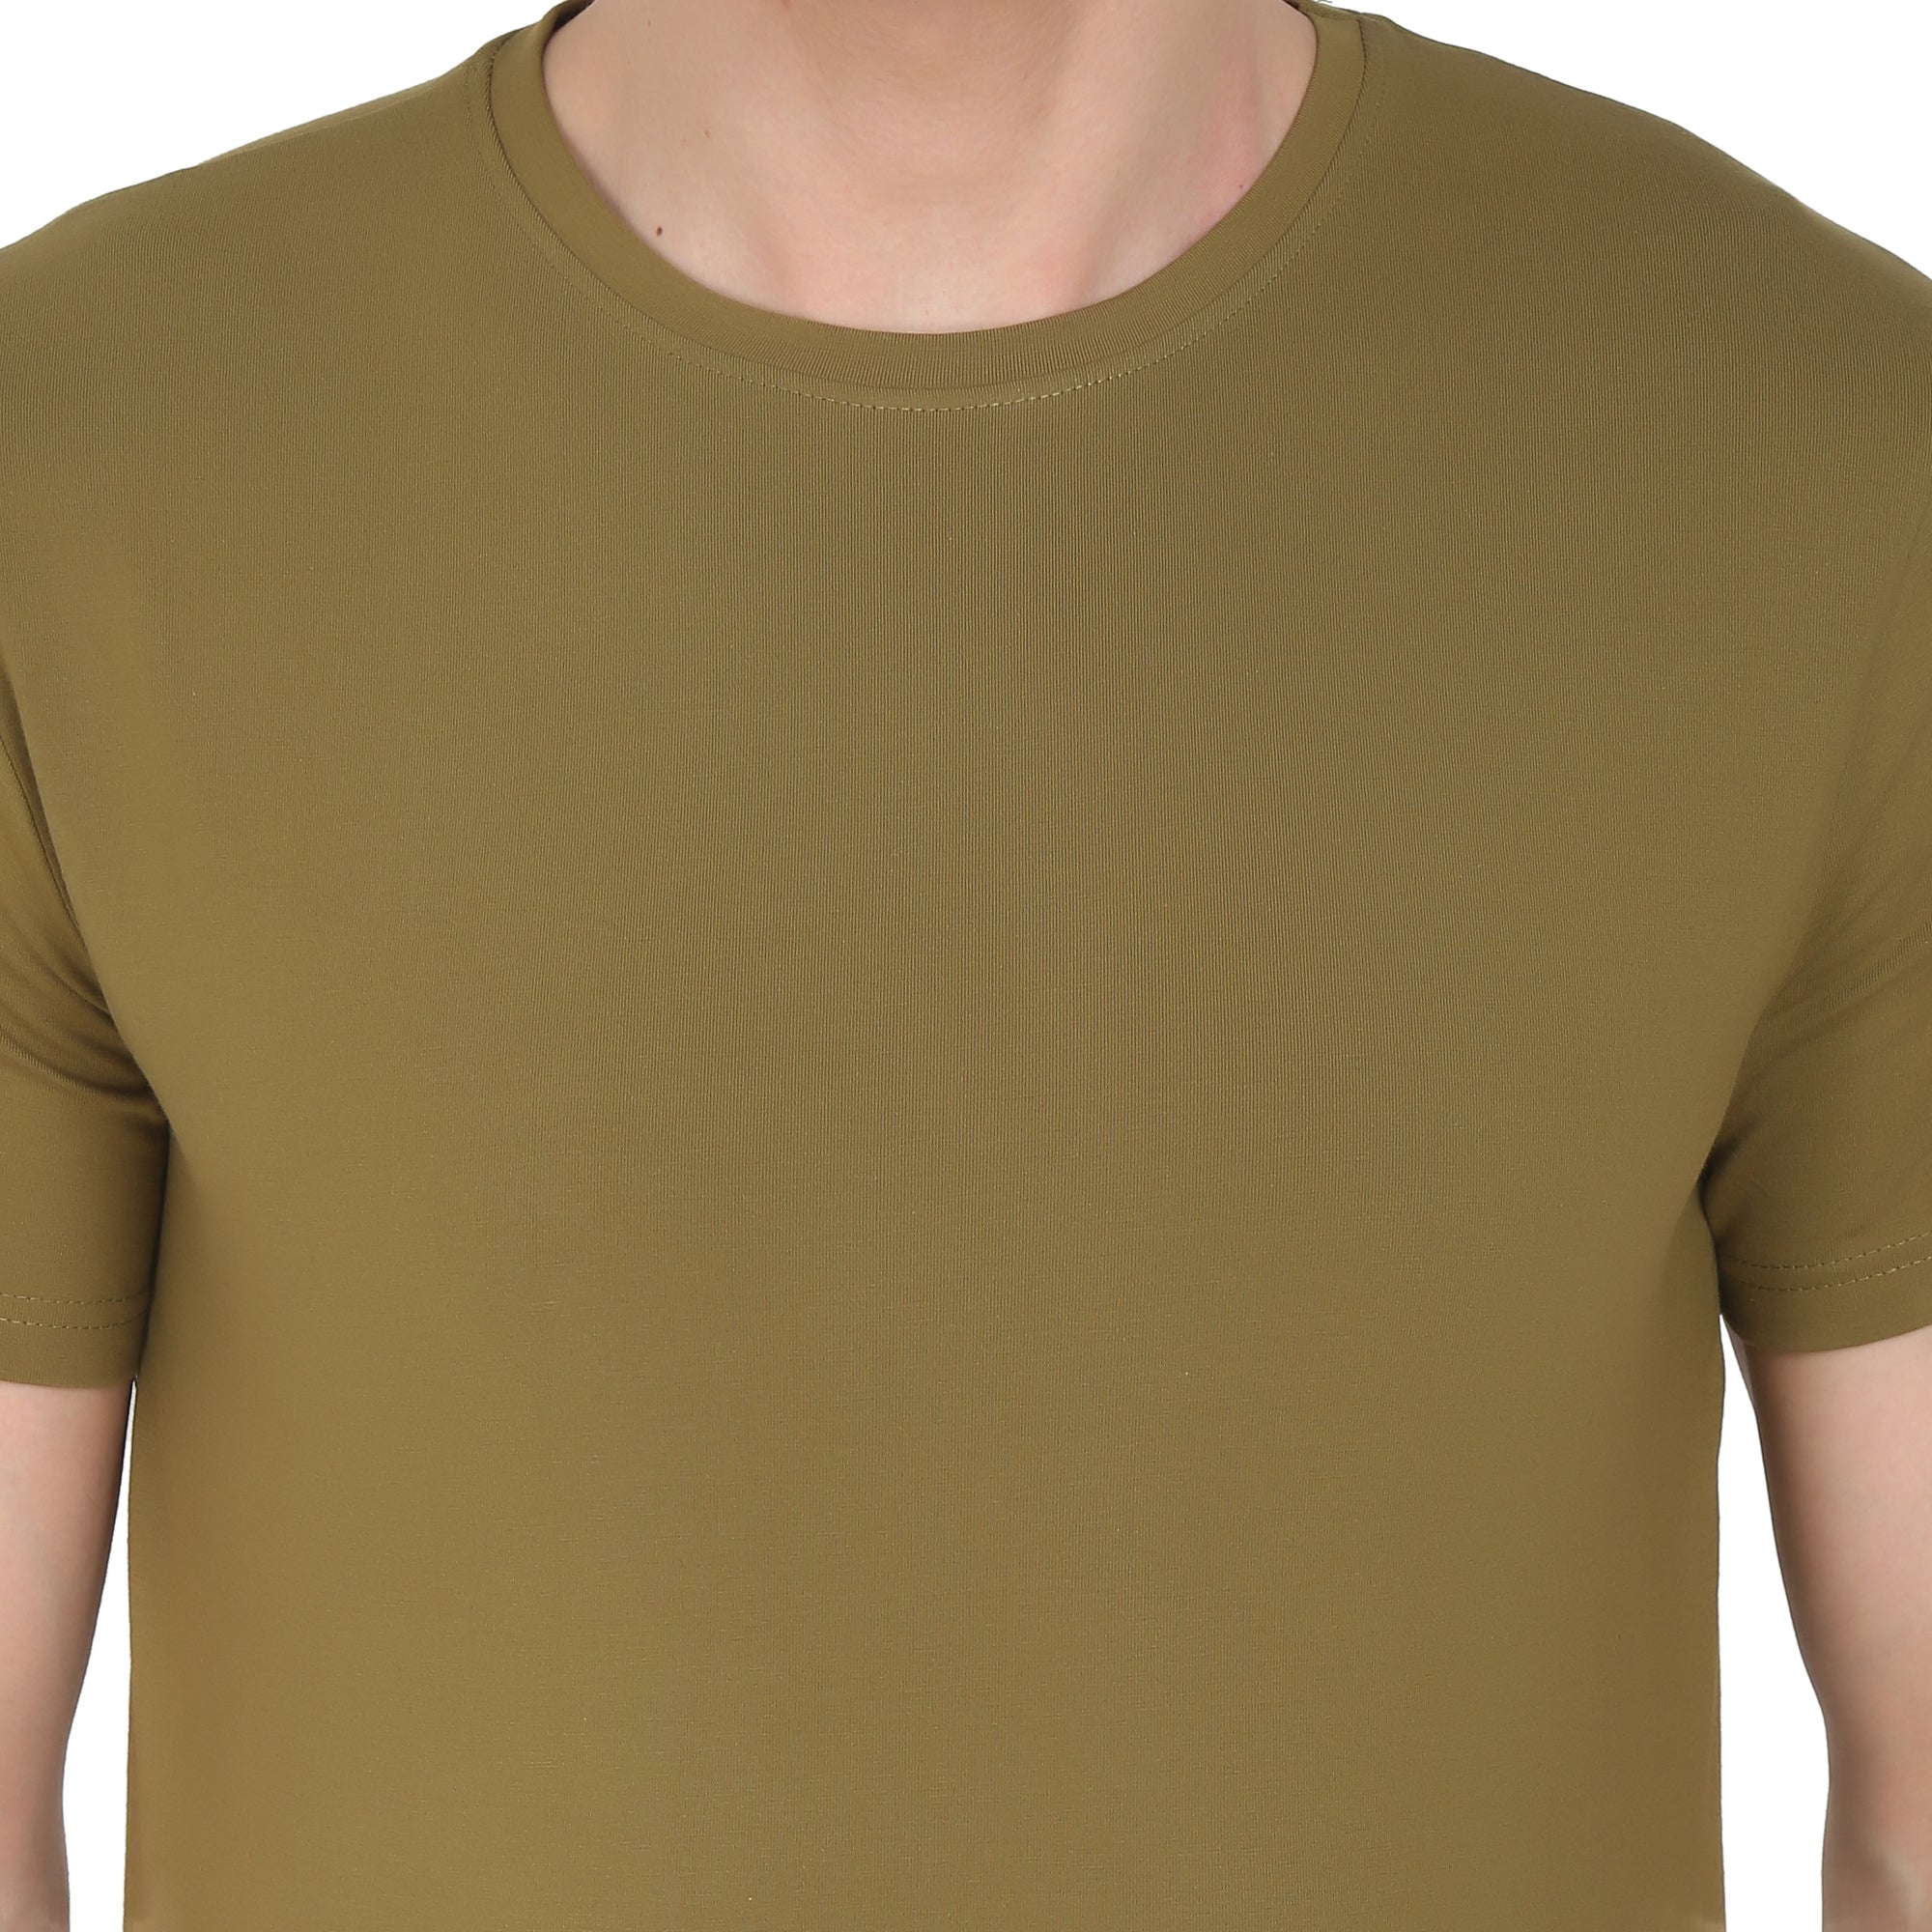 Men Four Way Stretch Cotton Plain T-shirt - Brown Colour